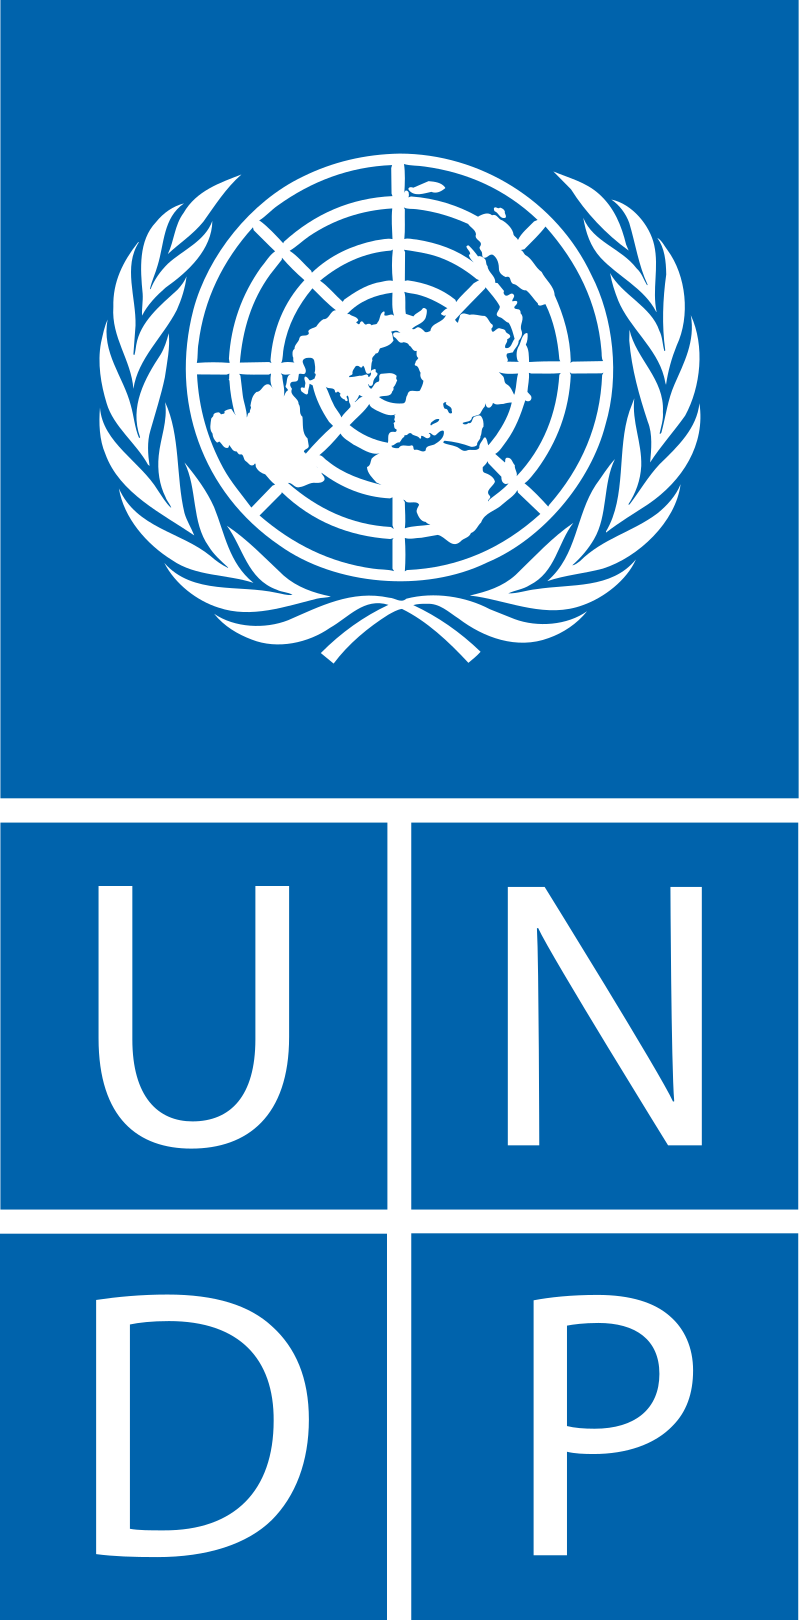 ООН ПРООН - Программа развития ООН - UNDP - United Nations Development Programme